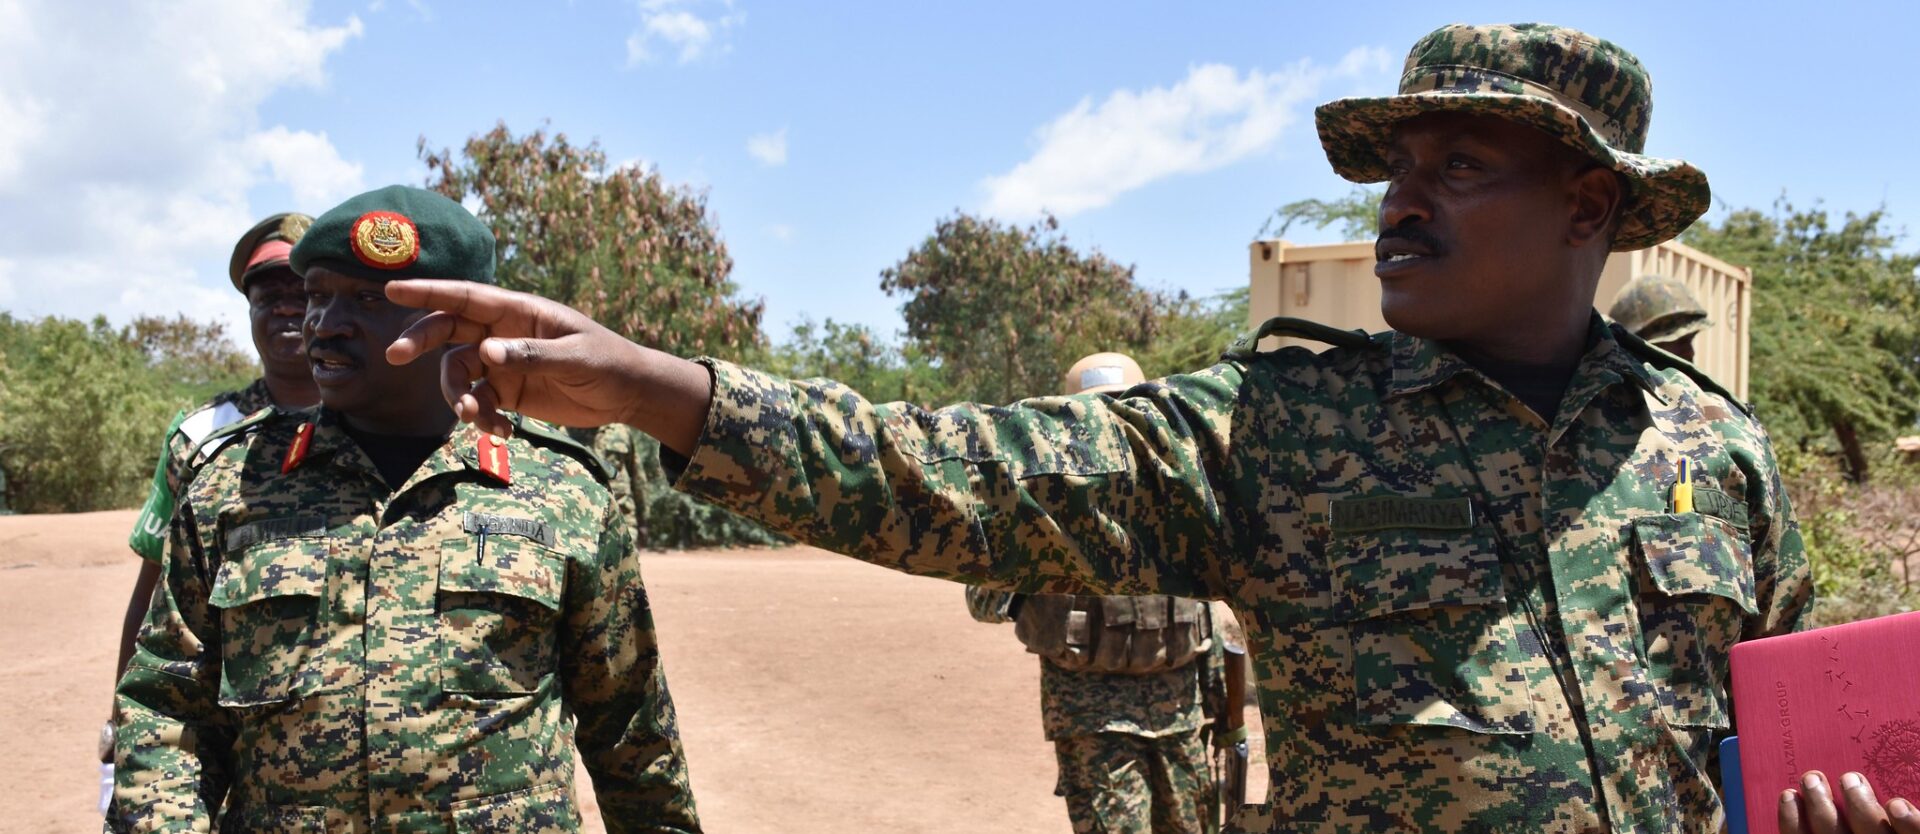 Les forces de l'ordre ougandaises recherchent activement le pasteur Simon Mundeyi | photo d'illustration/AMISOM/Flickr